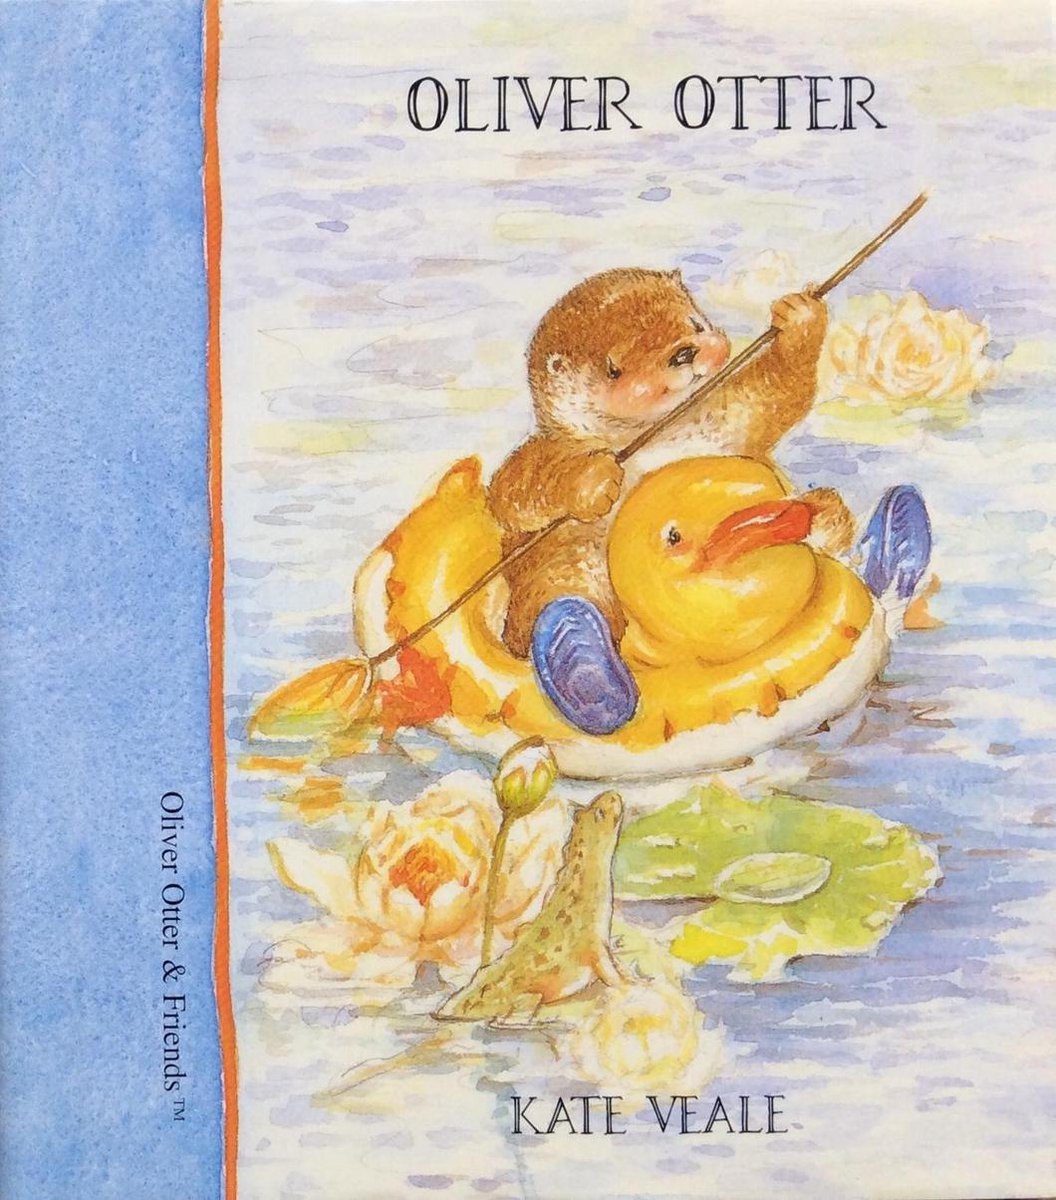 Oliver otter